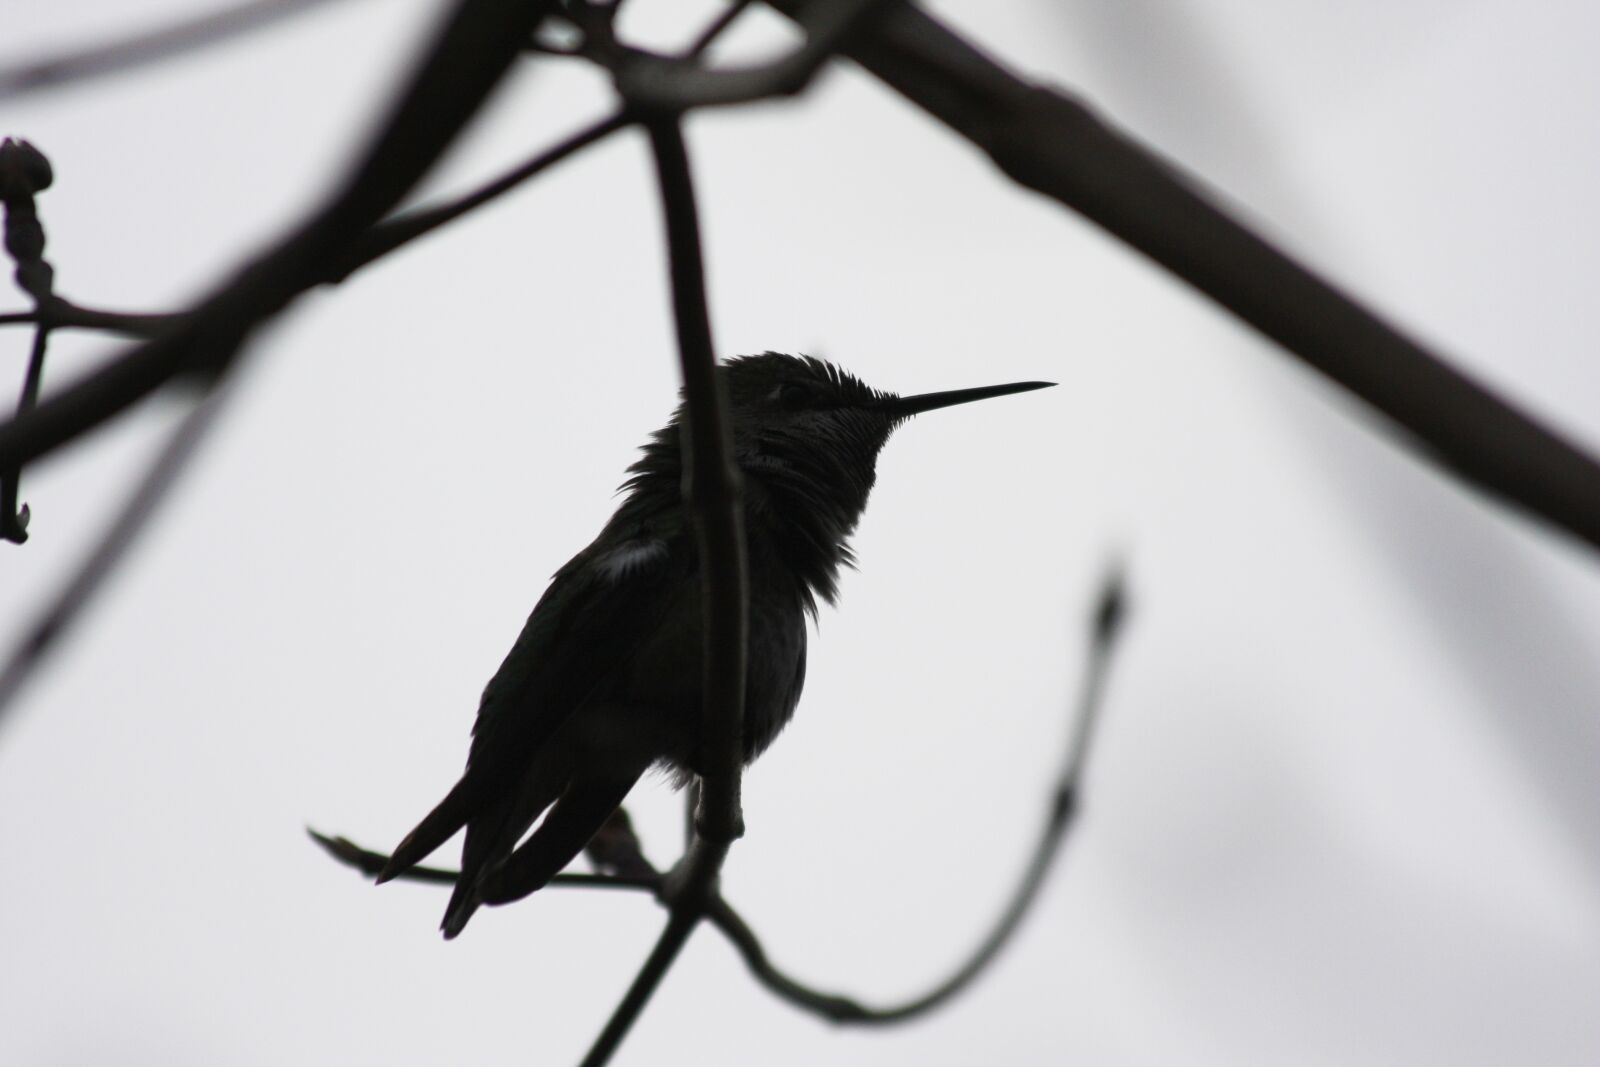 Canon EOS 40D sample photo. Hummingbird, bird, silhouette photography